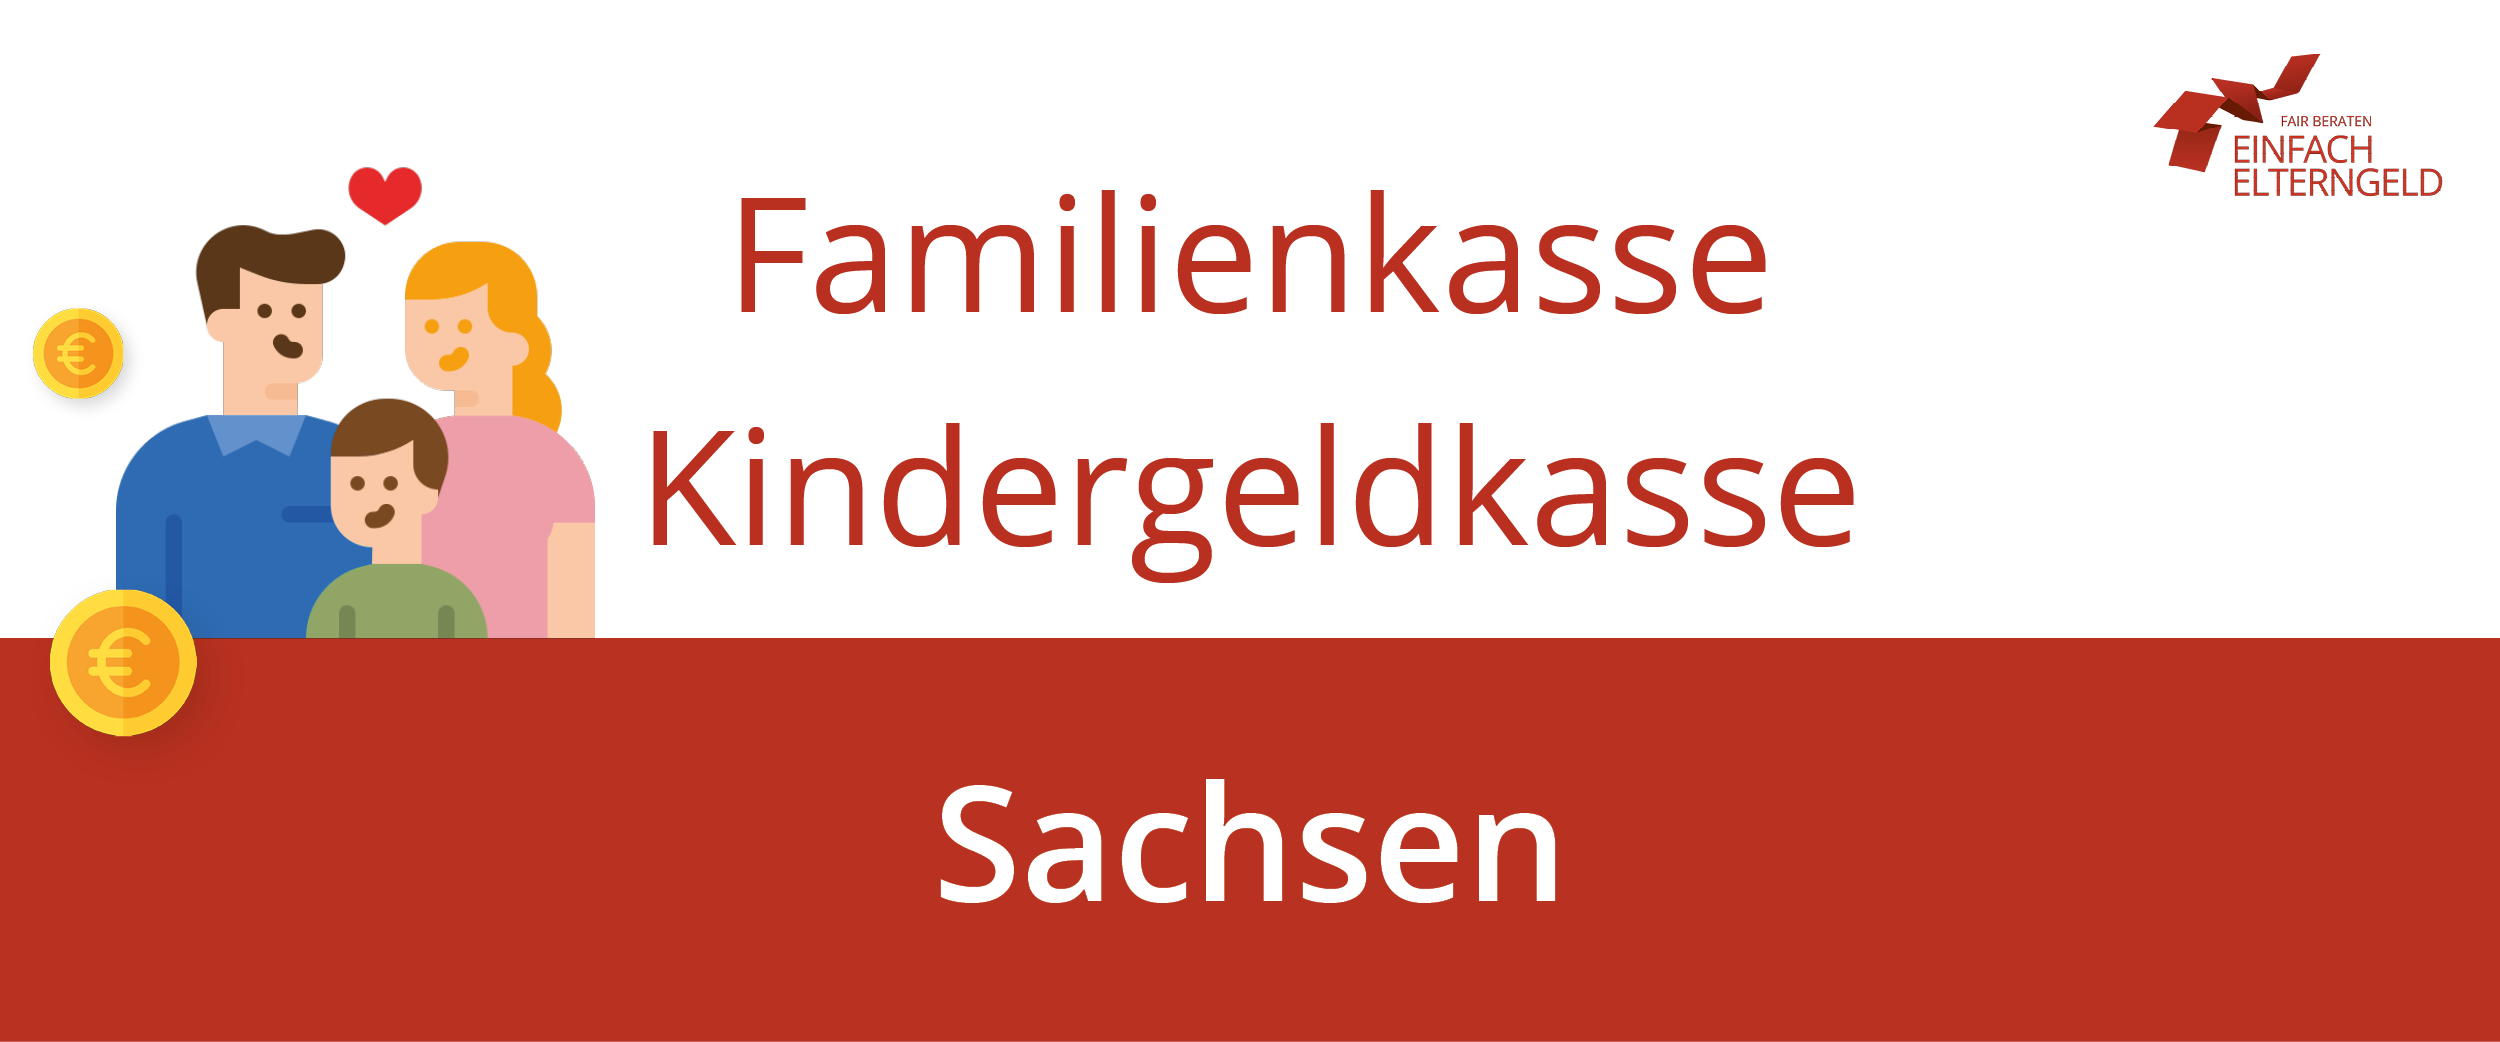 Familienkasse Kindergeldkasse Sachsen - Wir stellen Ihnen alle Familienkassen in Sachsen vor.